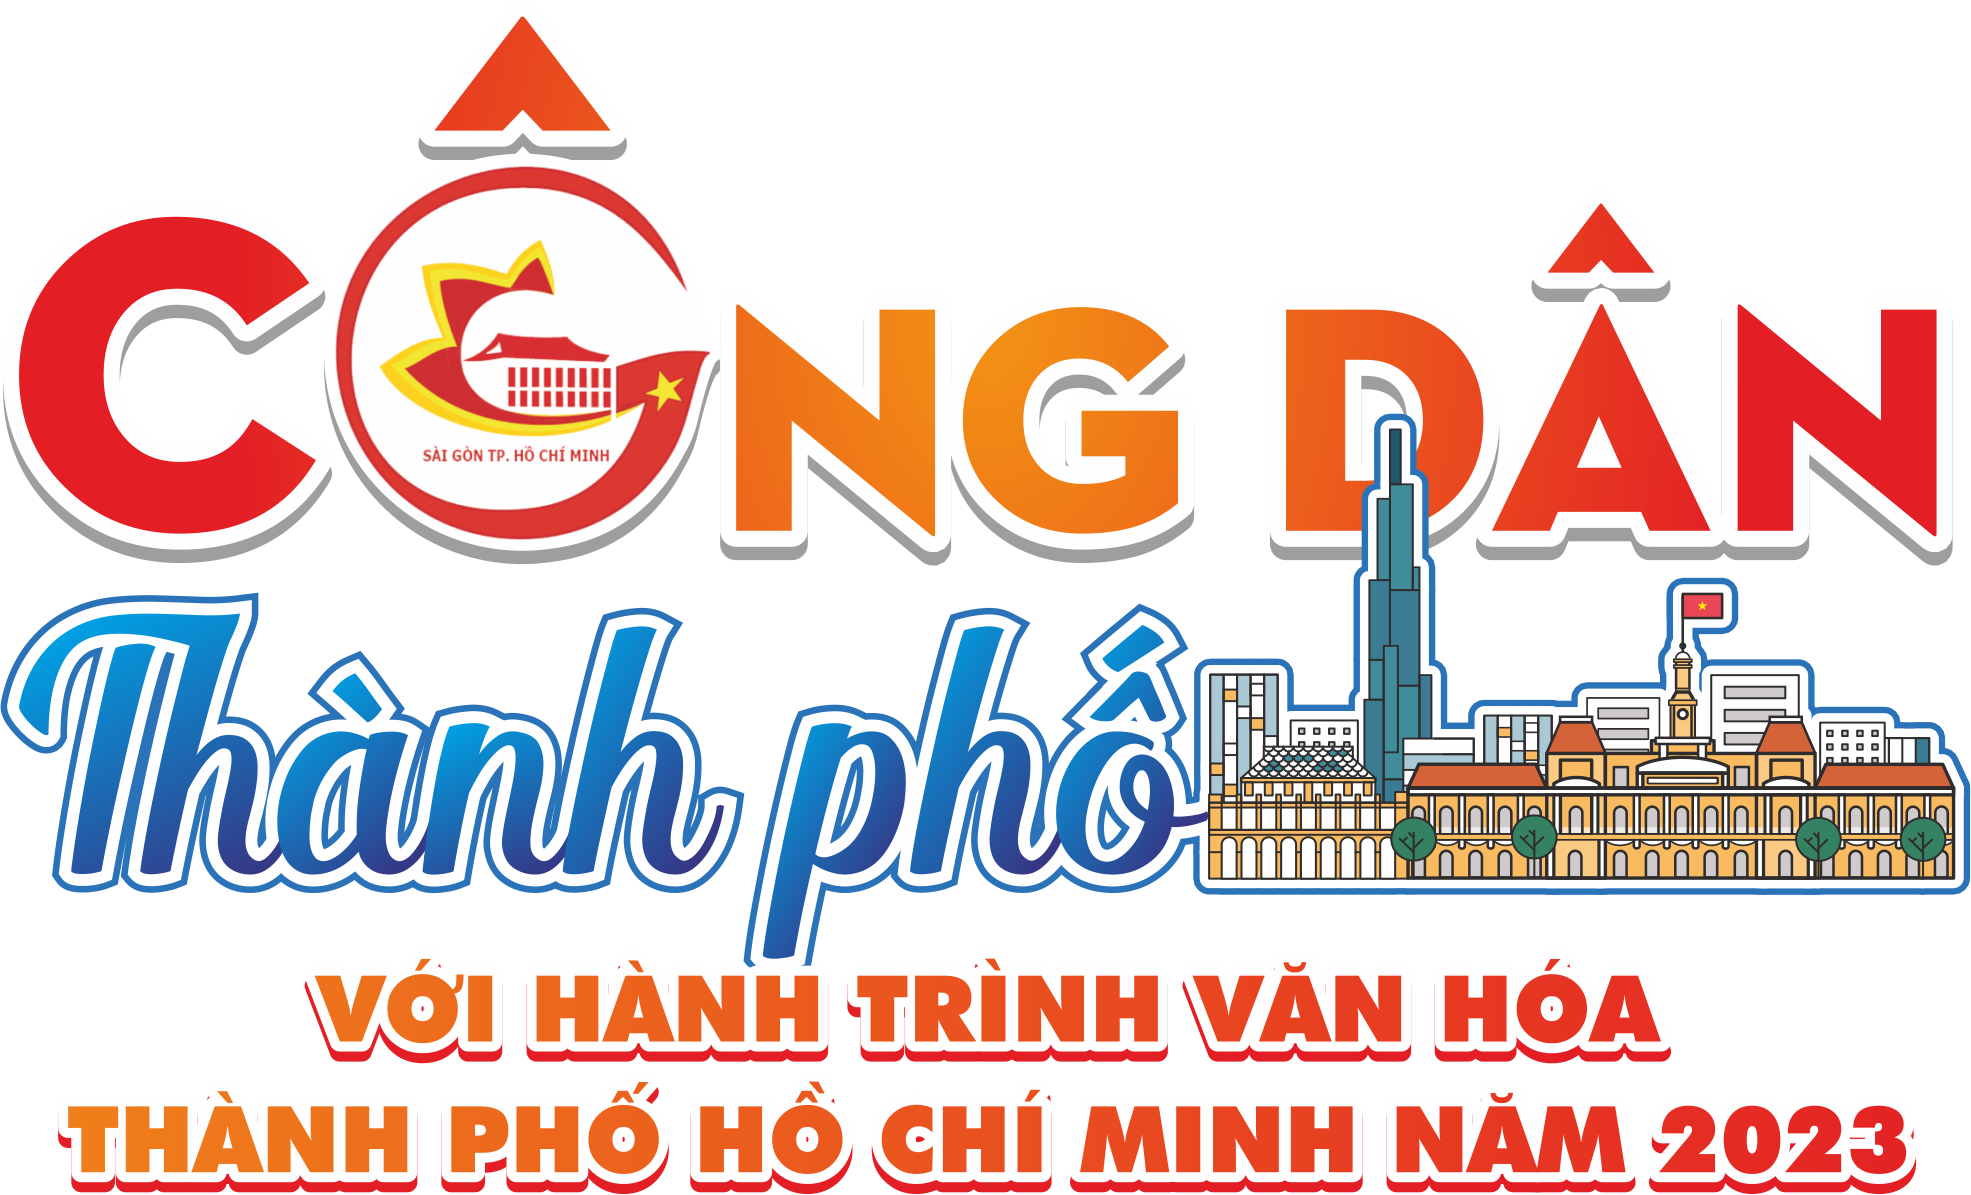 “Công dân thành phố với hành trình văn hóa Thành phố Hồ Chí Minh” năm 2023